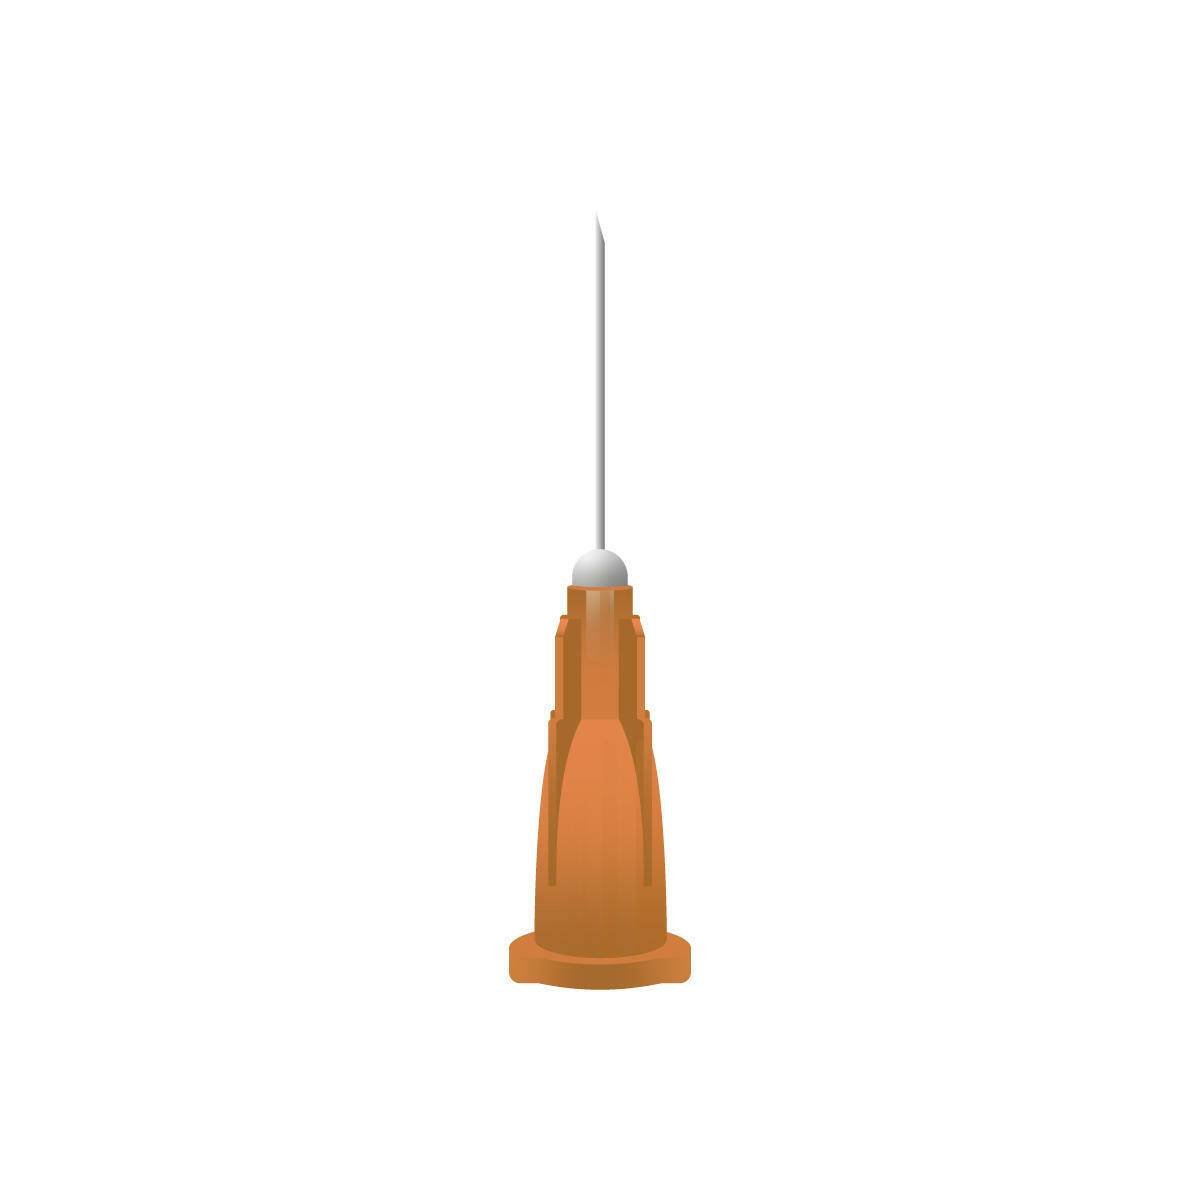 25g 5/8 inch Orange Dispovet Veterinary Needles (0.5 x 16mm) 18084 UKMEDI.CO.UK